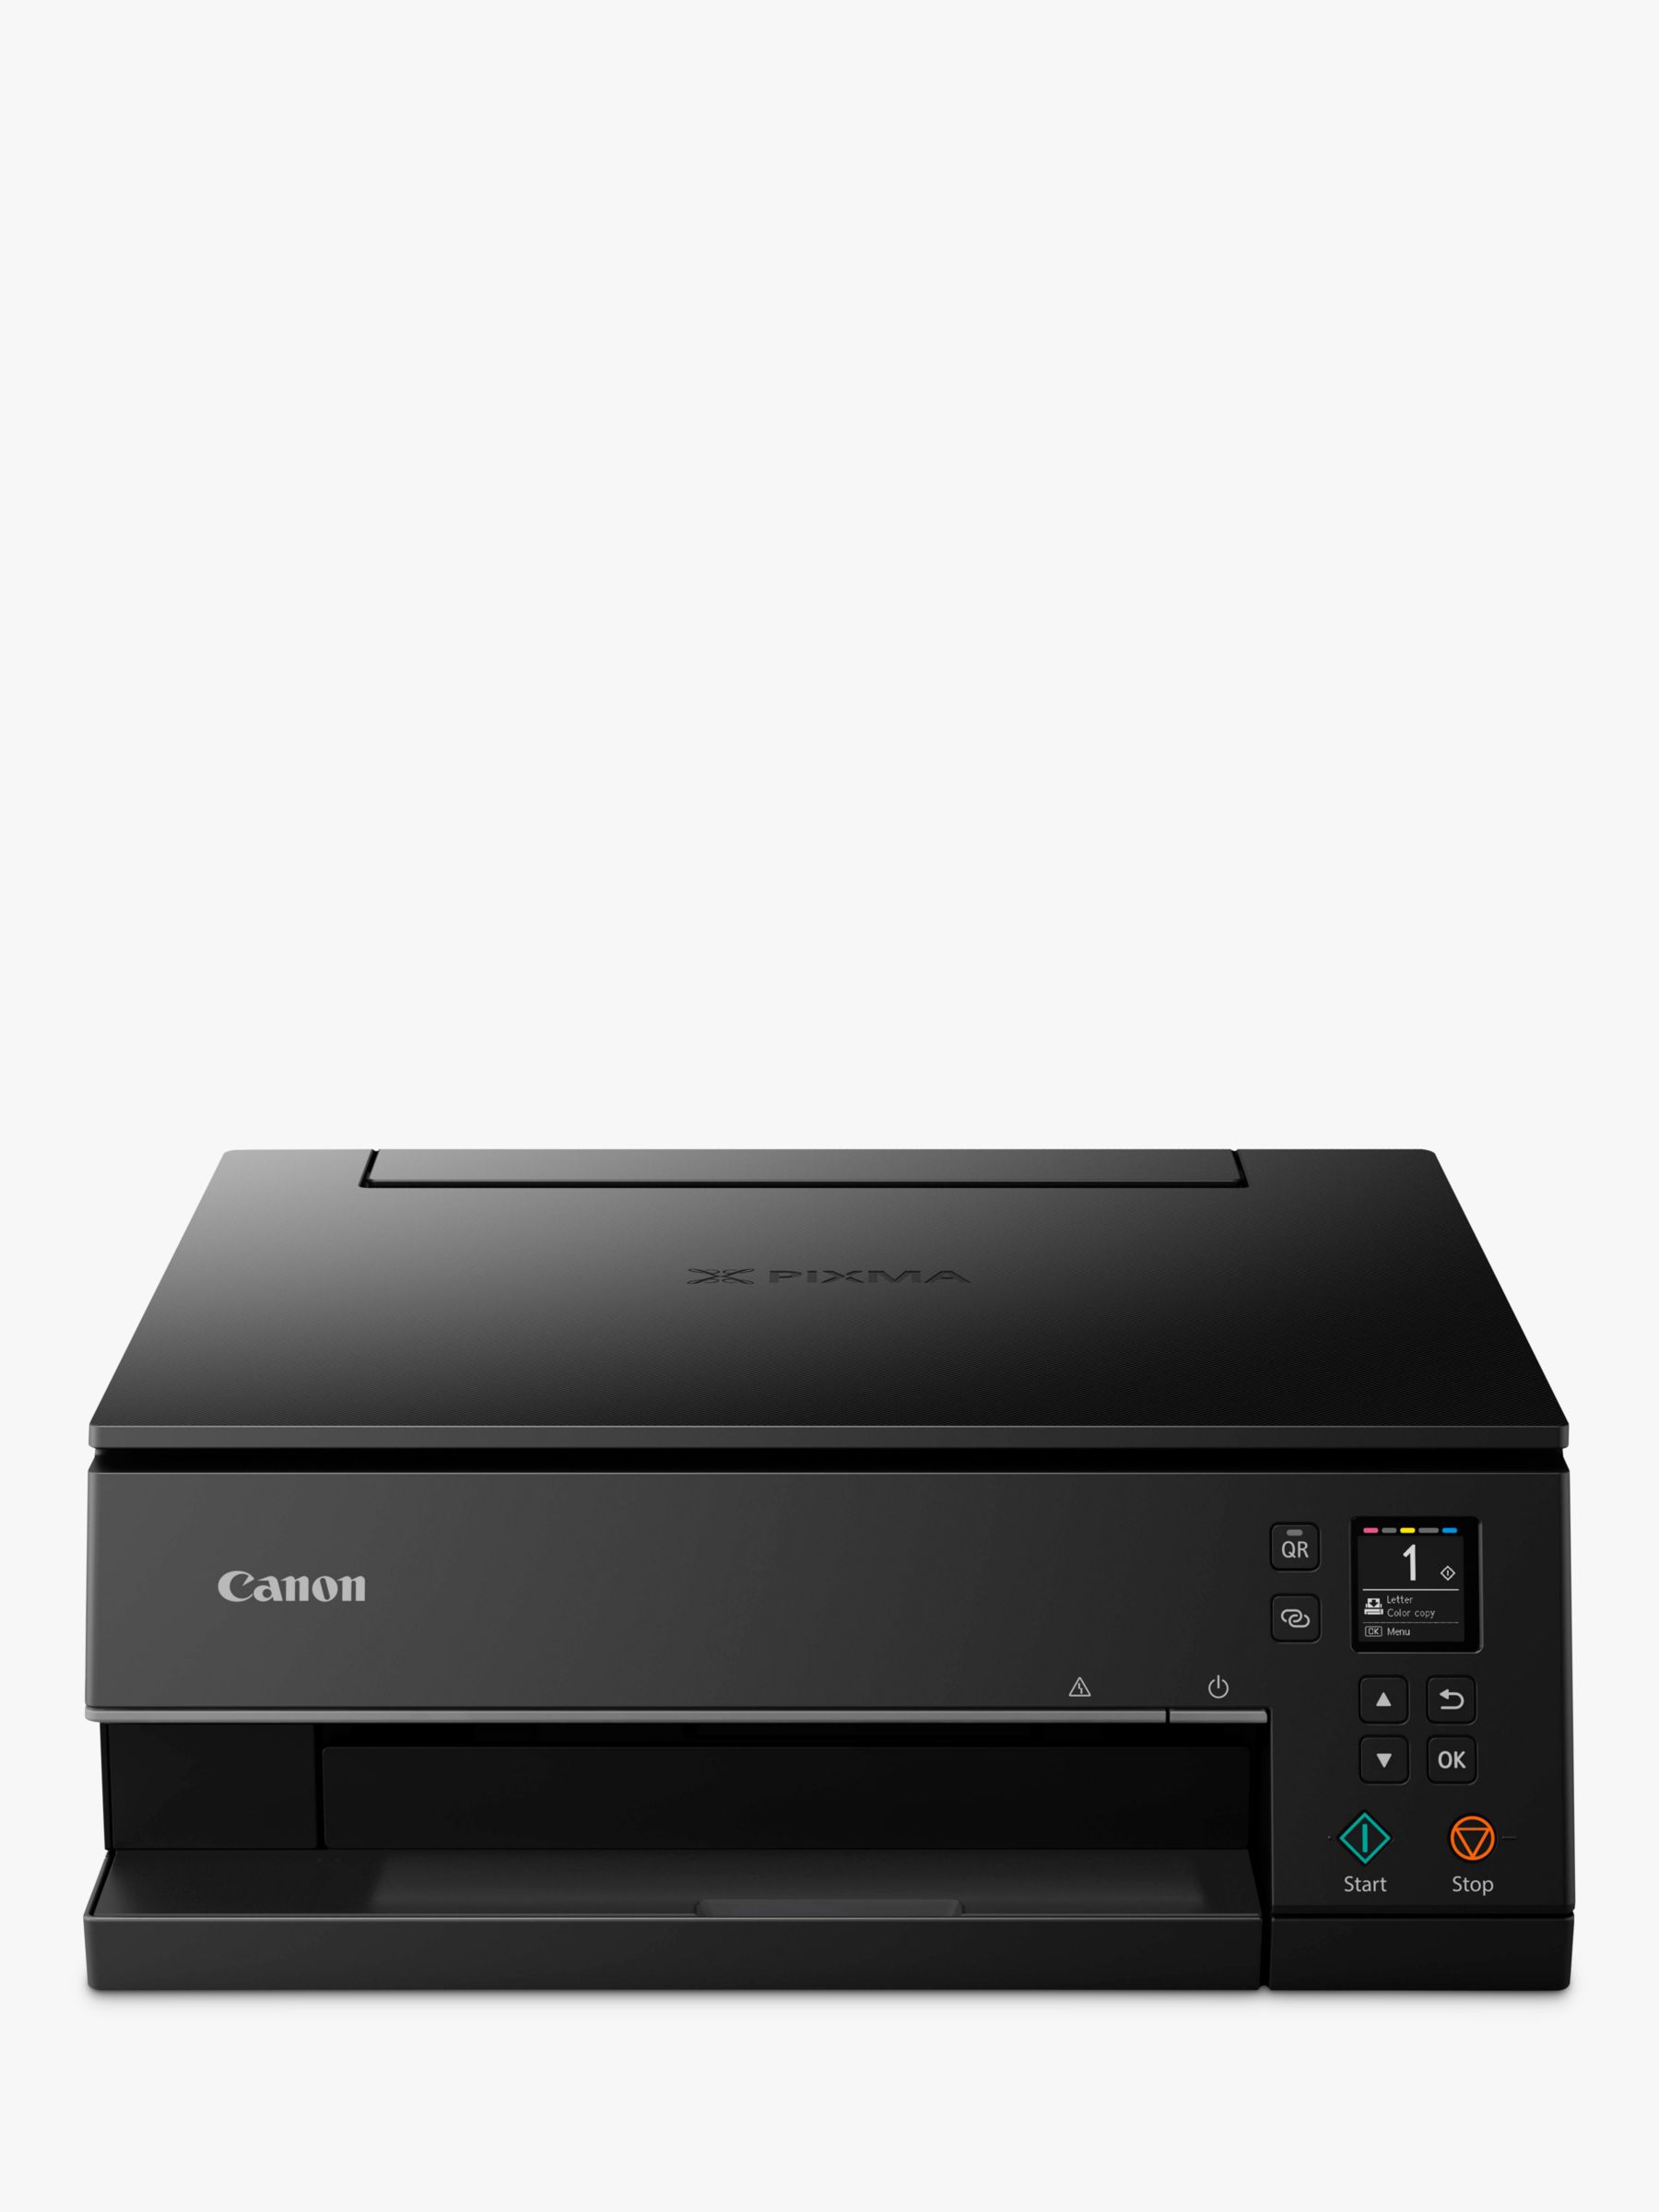 Canon PIXMA TS6350 Three-in-One Wireless Wi-Fi Printer, Black